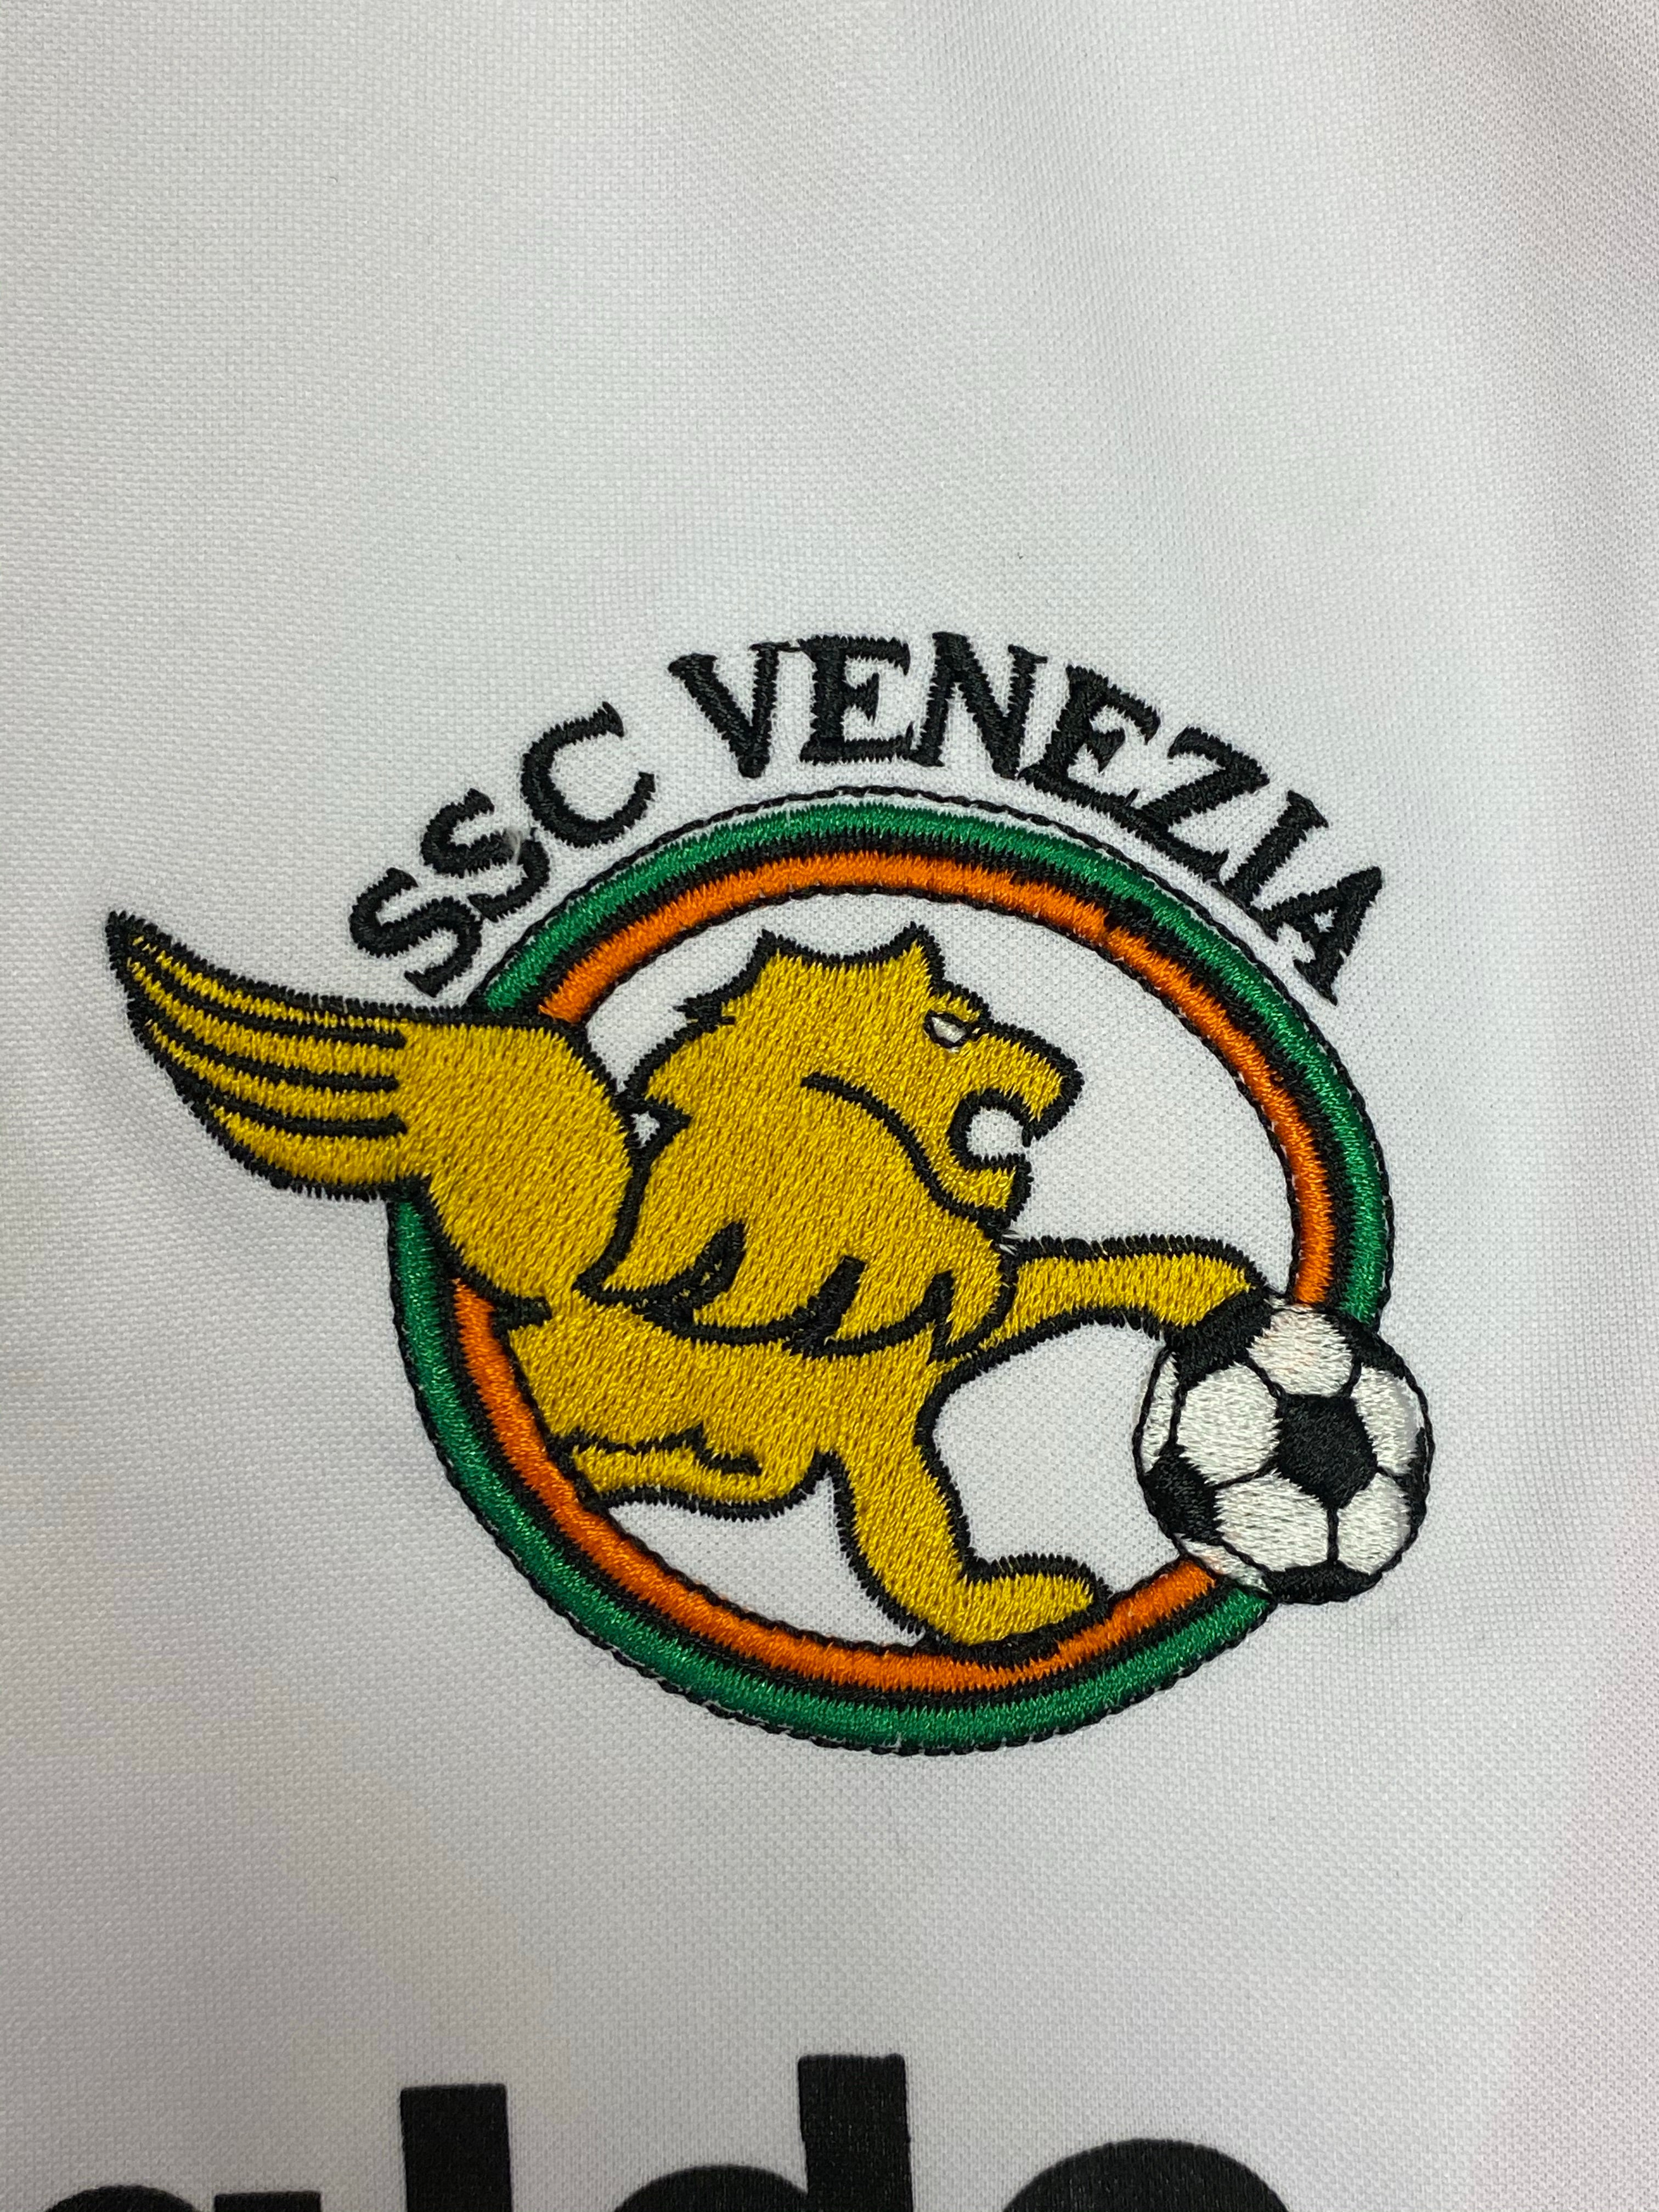 2005/06 Venezia Away L/S Shirt (XL) 9/10